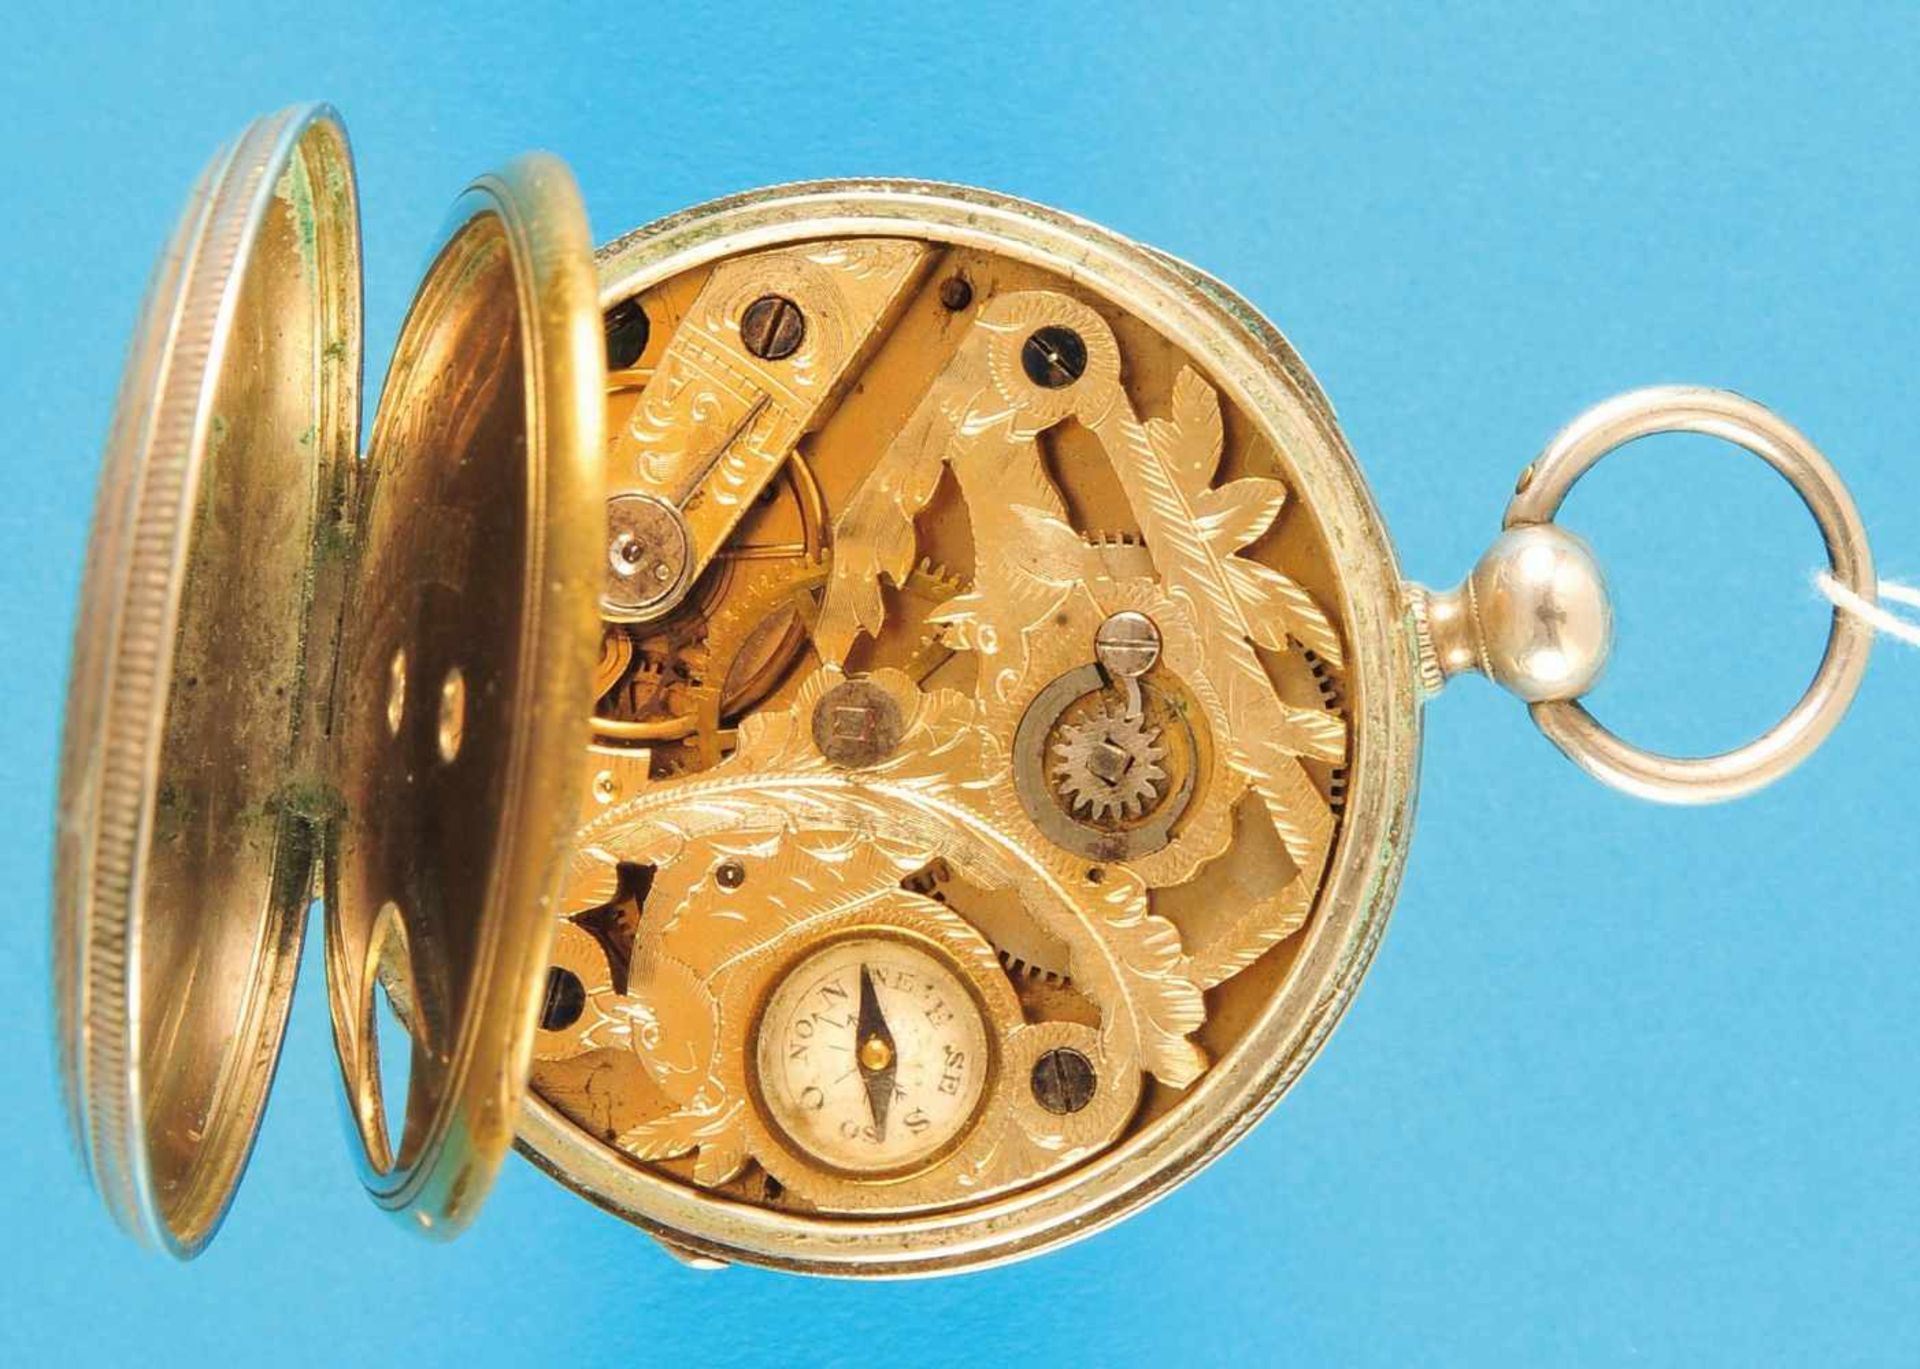 Silbertaschenuhr mit Kompass und Schlüsselaufzug, guillochiertes Gehäuse, Emailzifferblatt mit